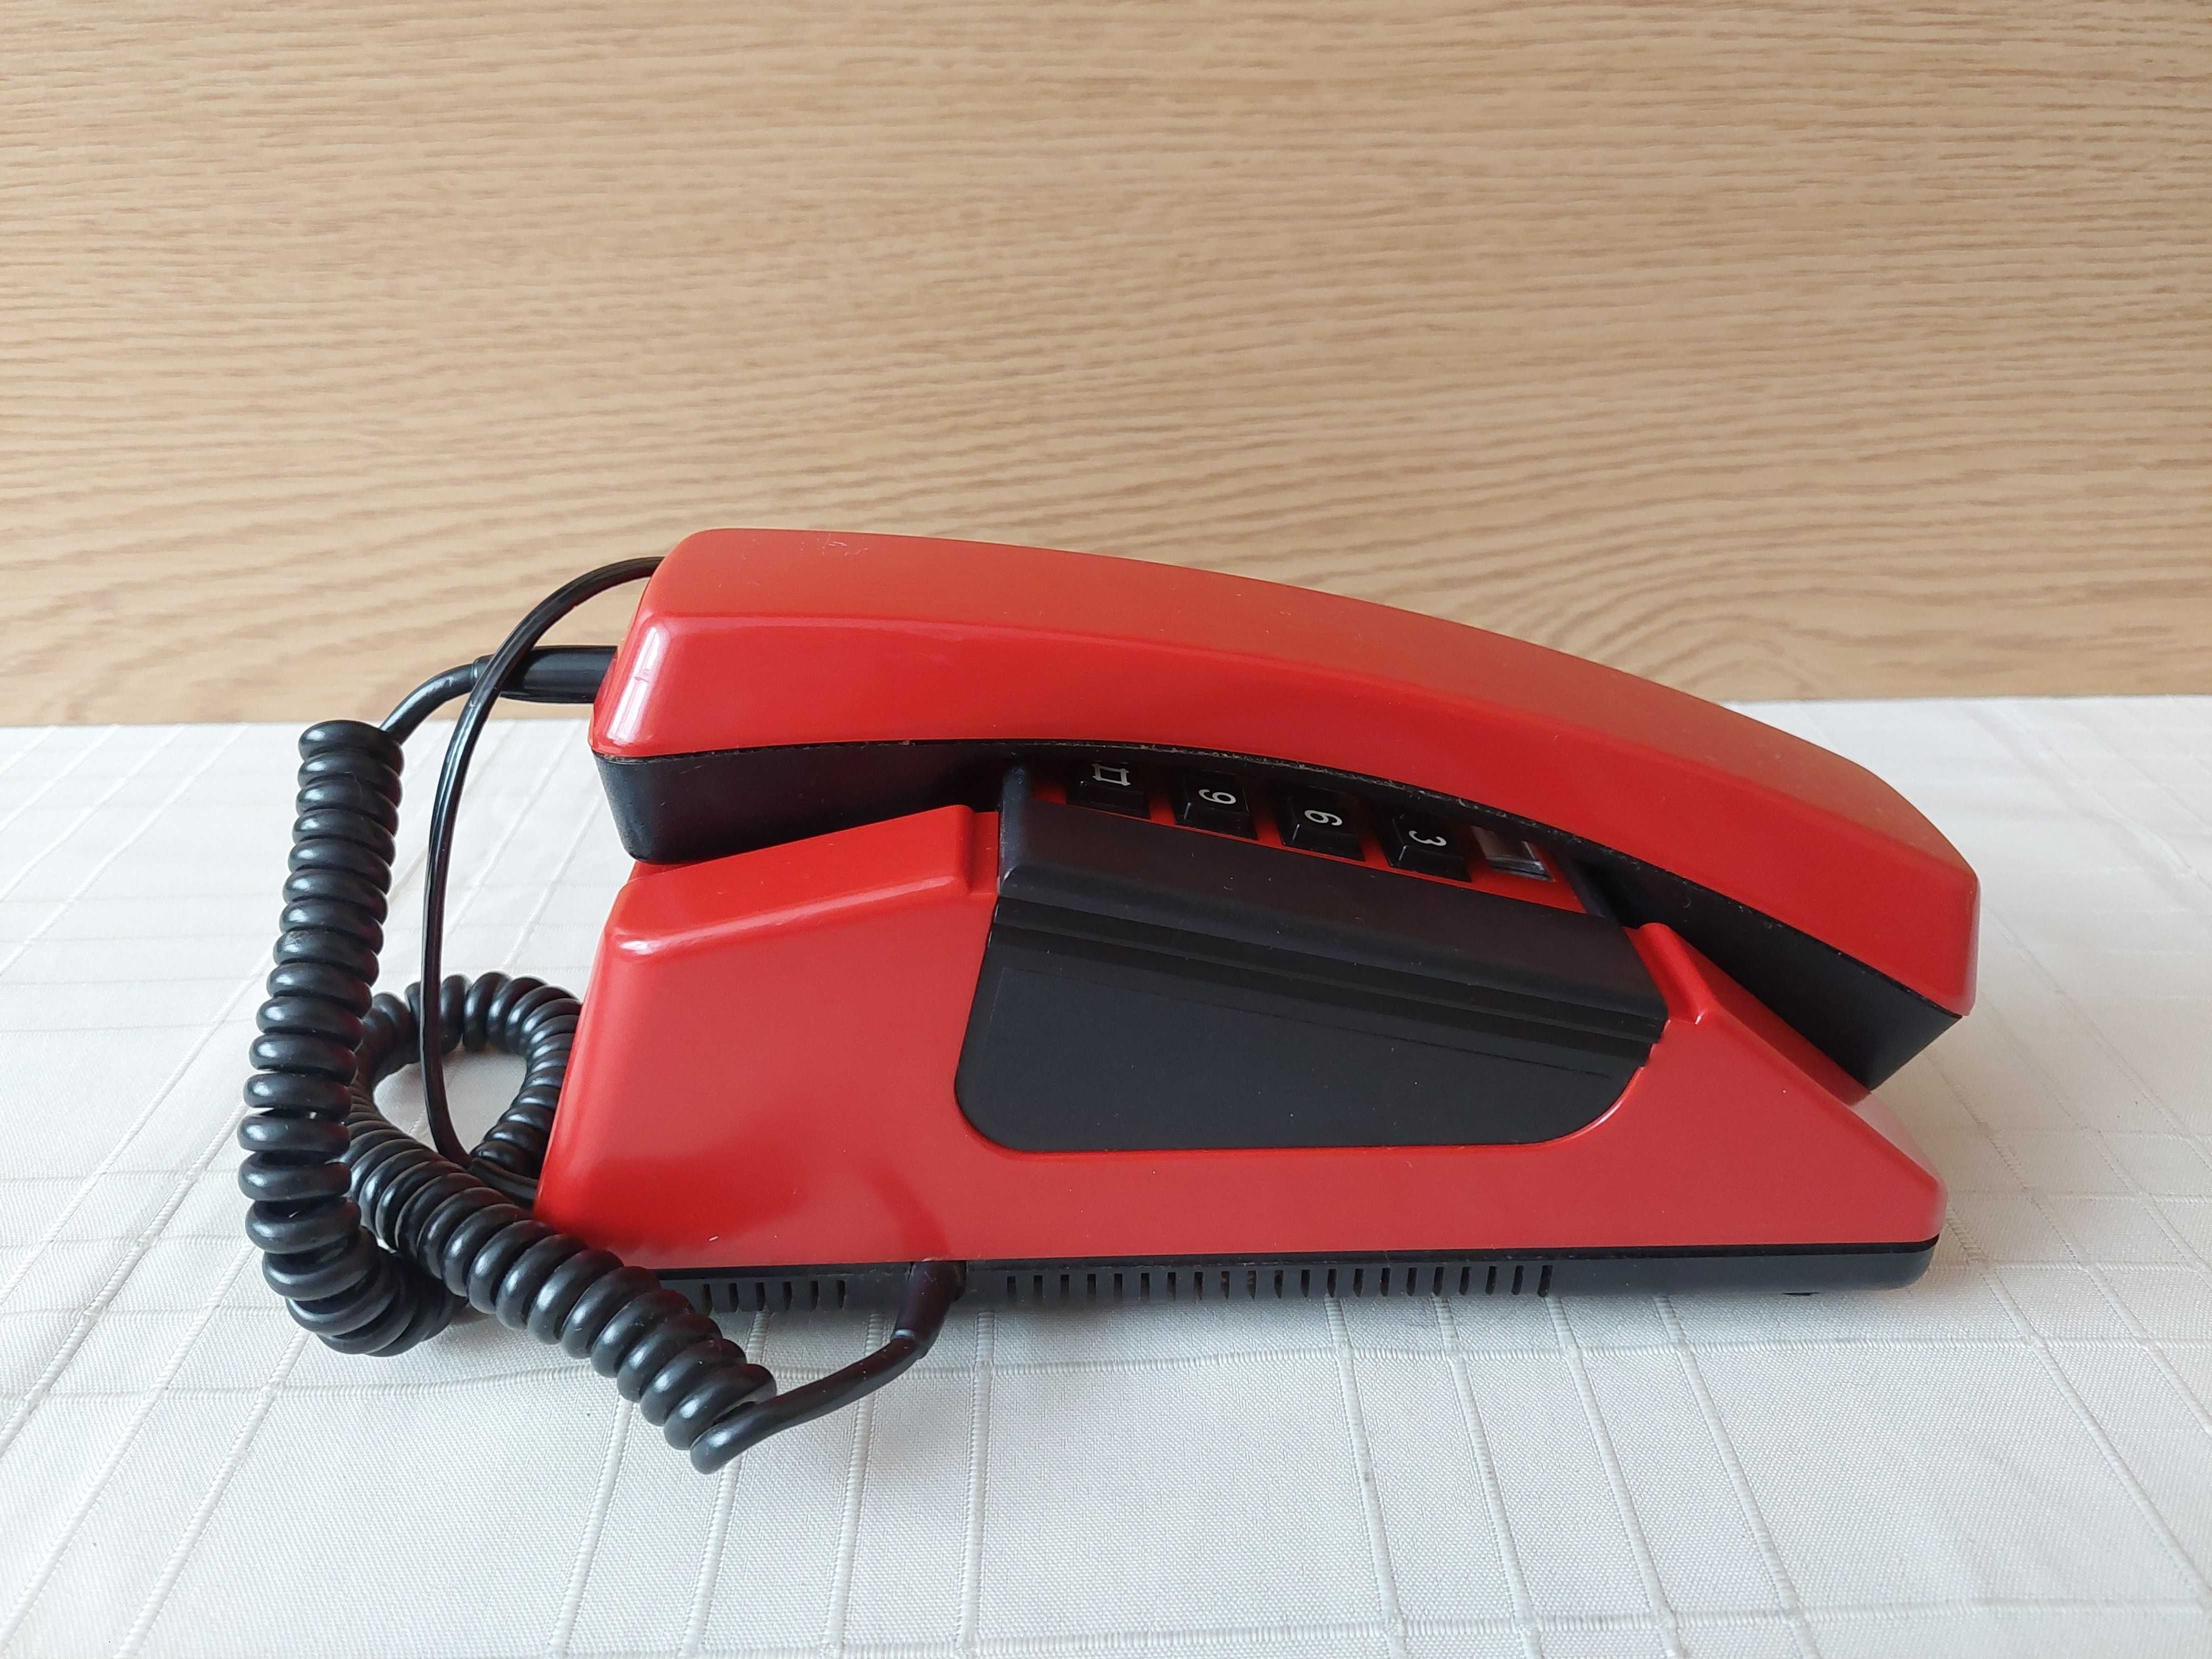 Telefon stacjonarny - Bratek 324A (czerwony)